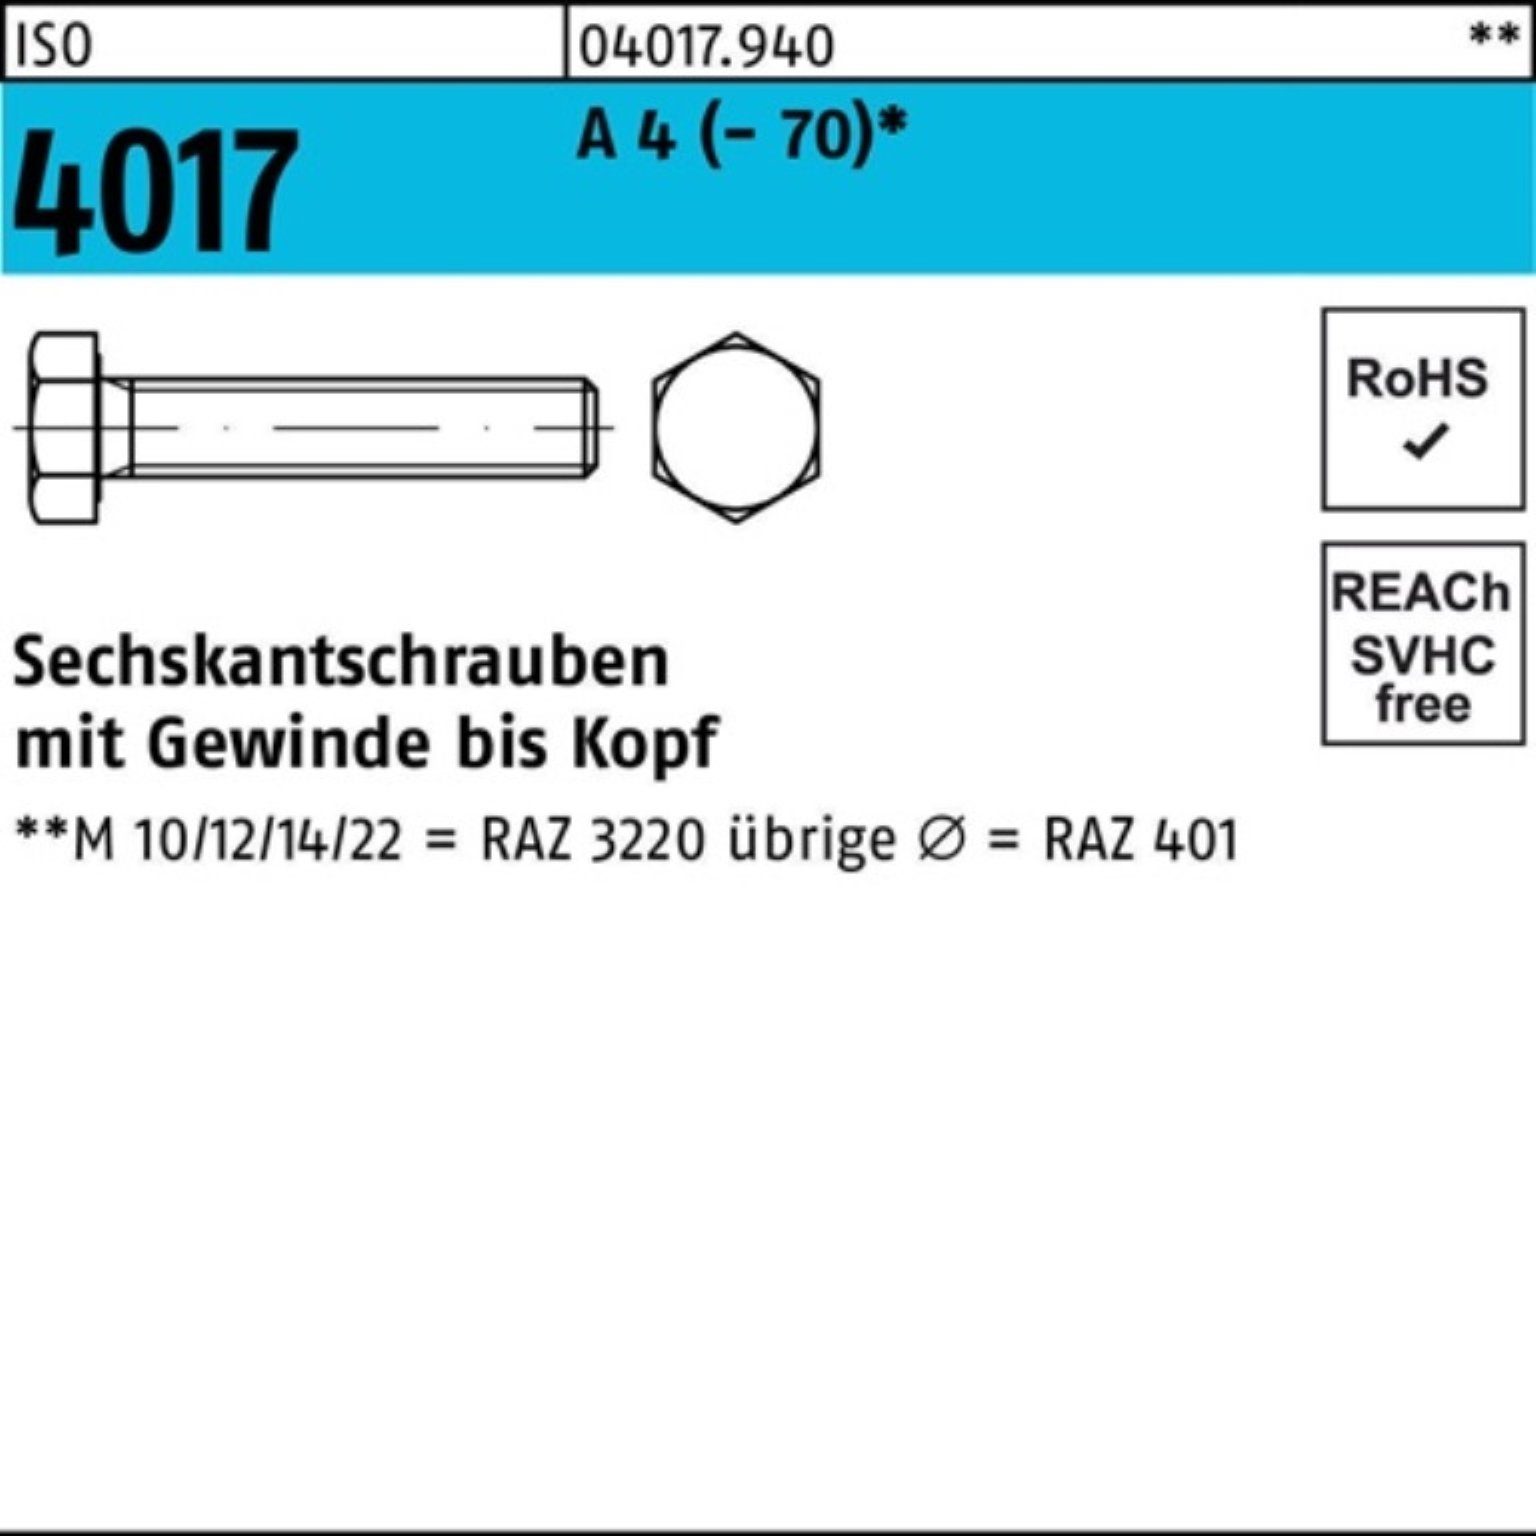 Bufab Sechskantschraube 100er Pack Sechskantschraube ISO 4017 VG M24x 80 A 4 (70) 1 Stück I